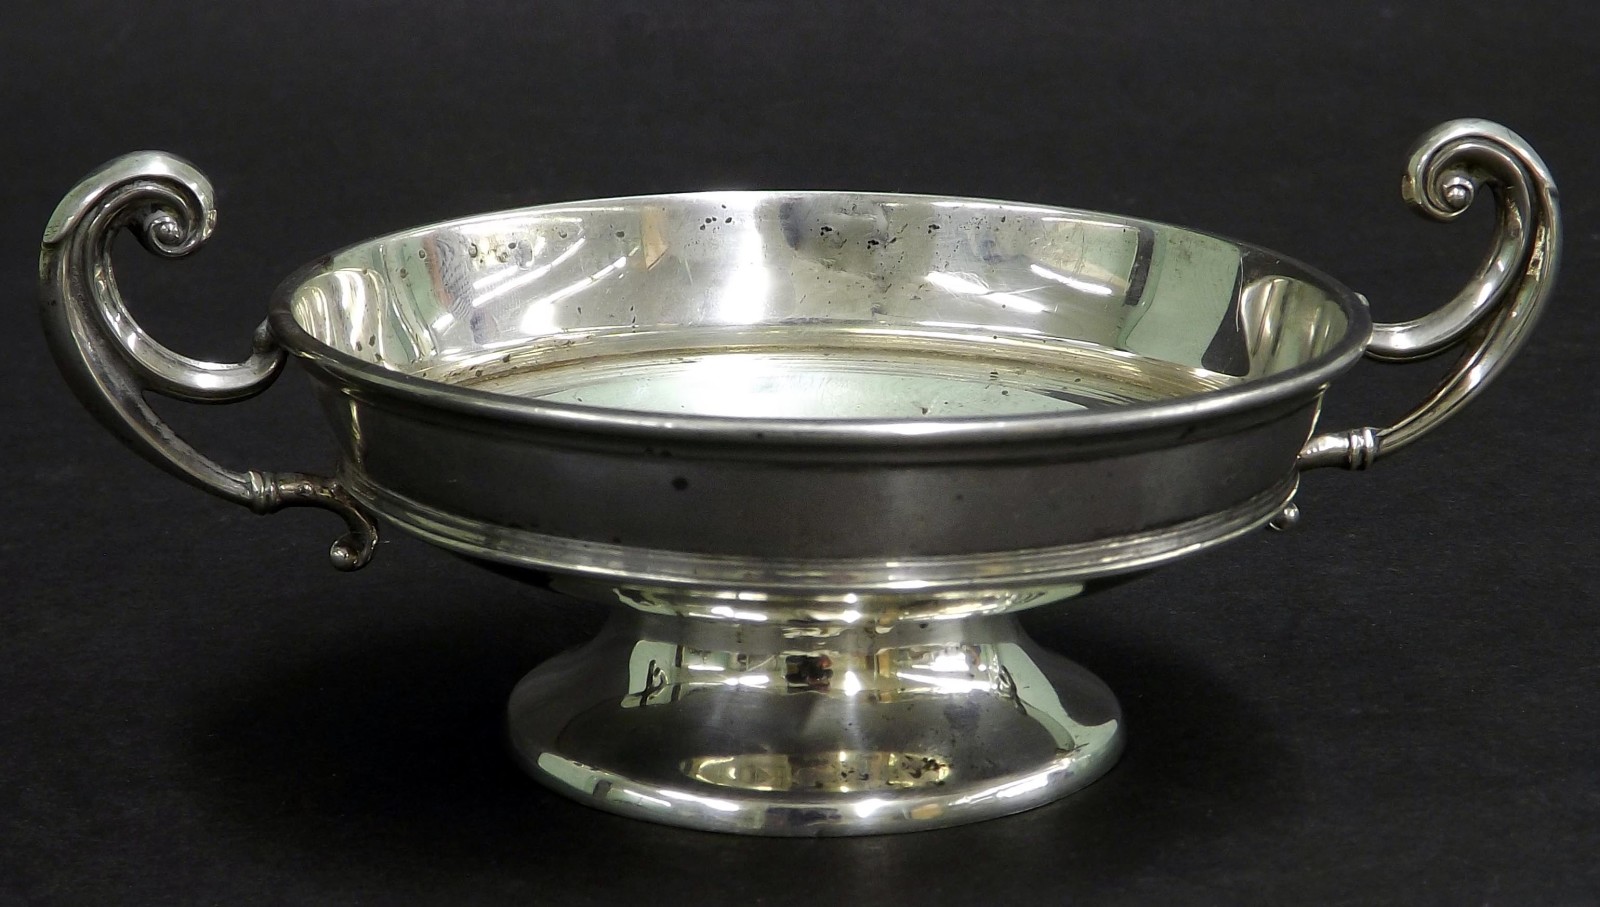 Silver twin handled trinket dish, Birmingham 1914, 2.25" high, 3oz approx